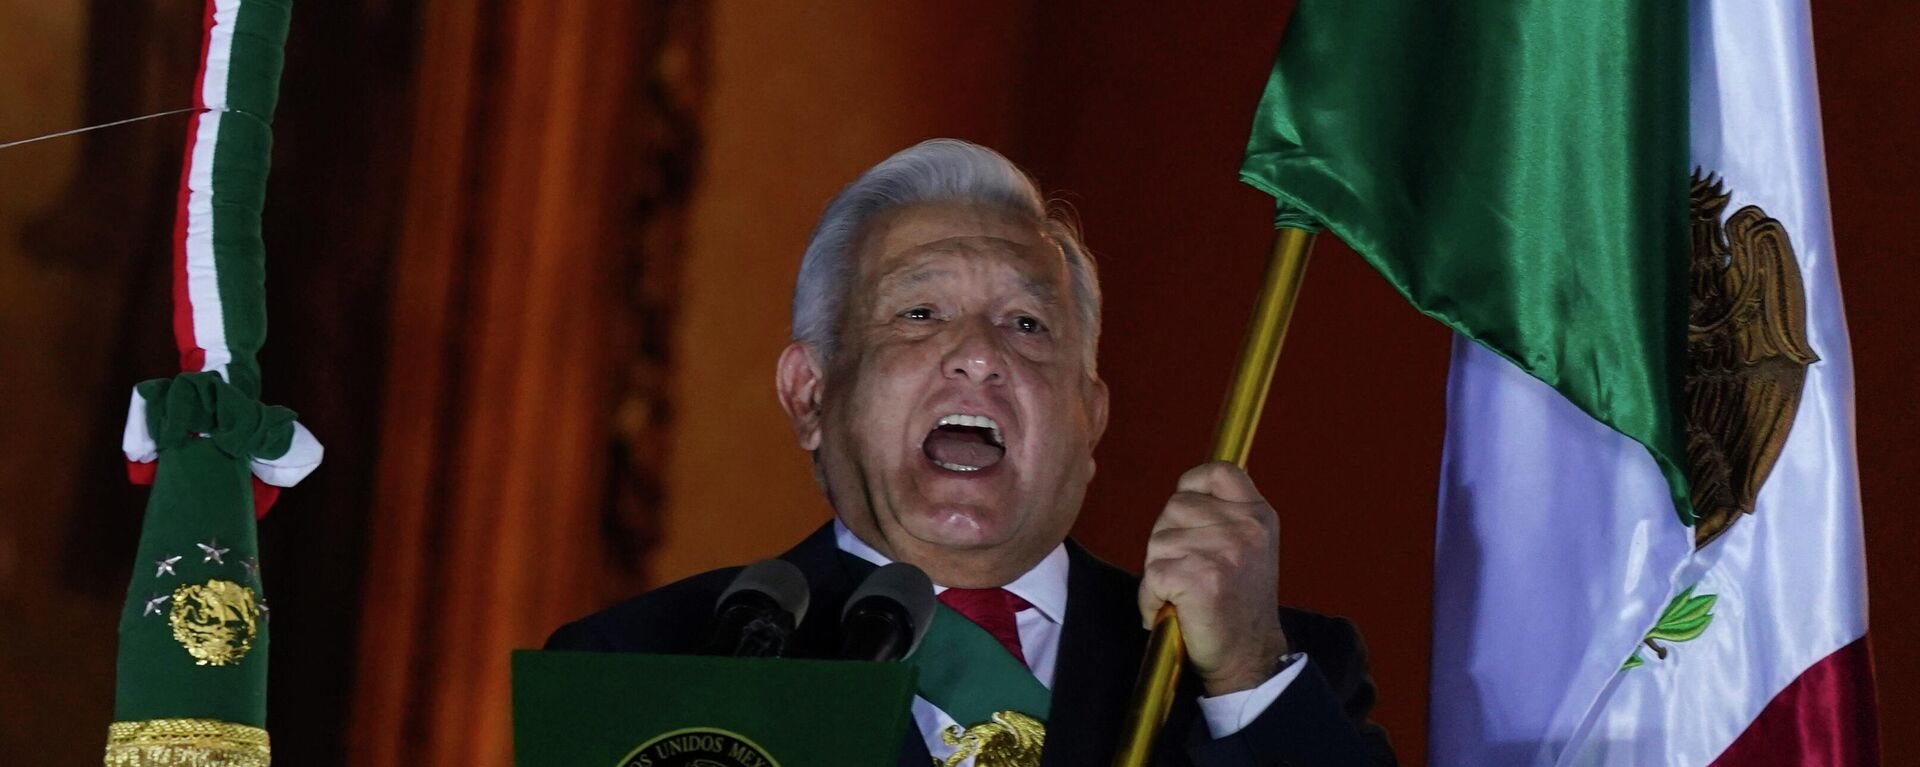 O presidente mexicano, Andrés Manuel López Obrador, dá o grito característico do início das comemorações do Dia da Independência, no Palácio Nacional, sede do Poder Executivo. Cidade do México, 15 de setembro de 2022 - Sputnik Brasil, 1920, 16.09.2022